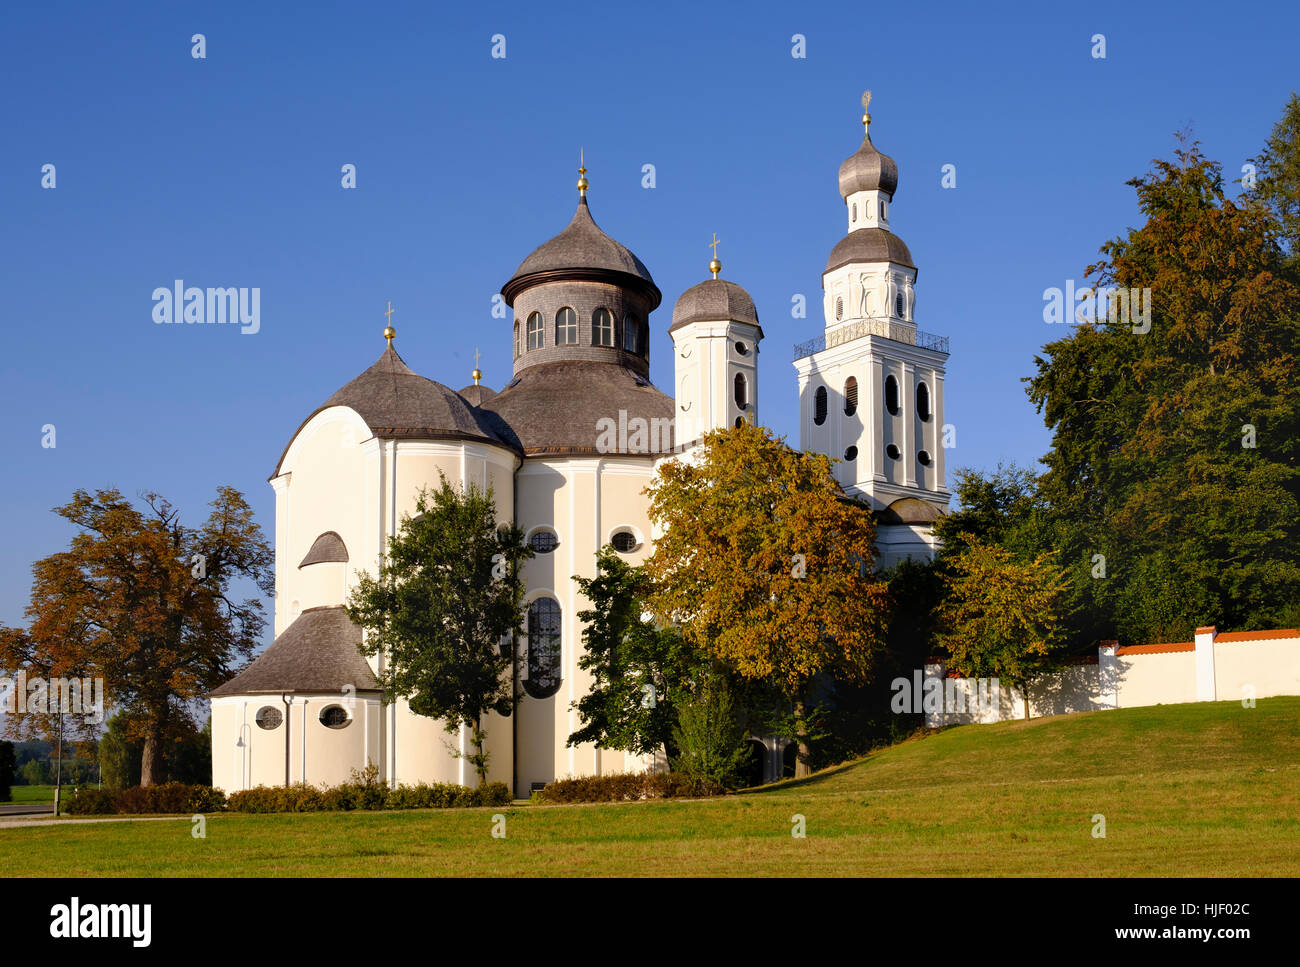 Église de pèlerinage Maria Birnbaum, Sielenbach, souabe, Bavière, Allemagne Banque D'Images